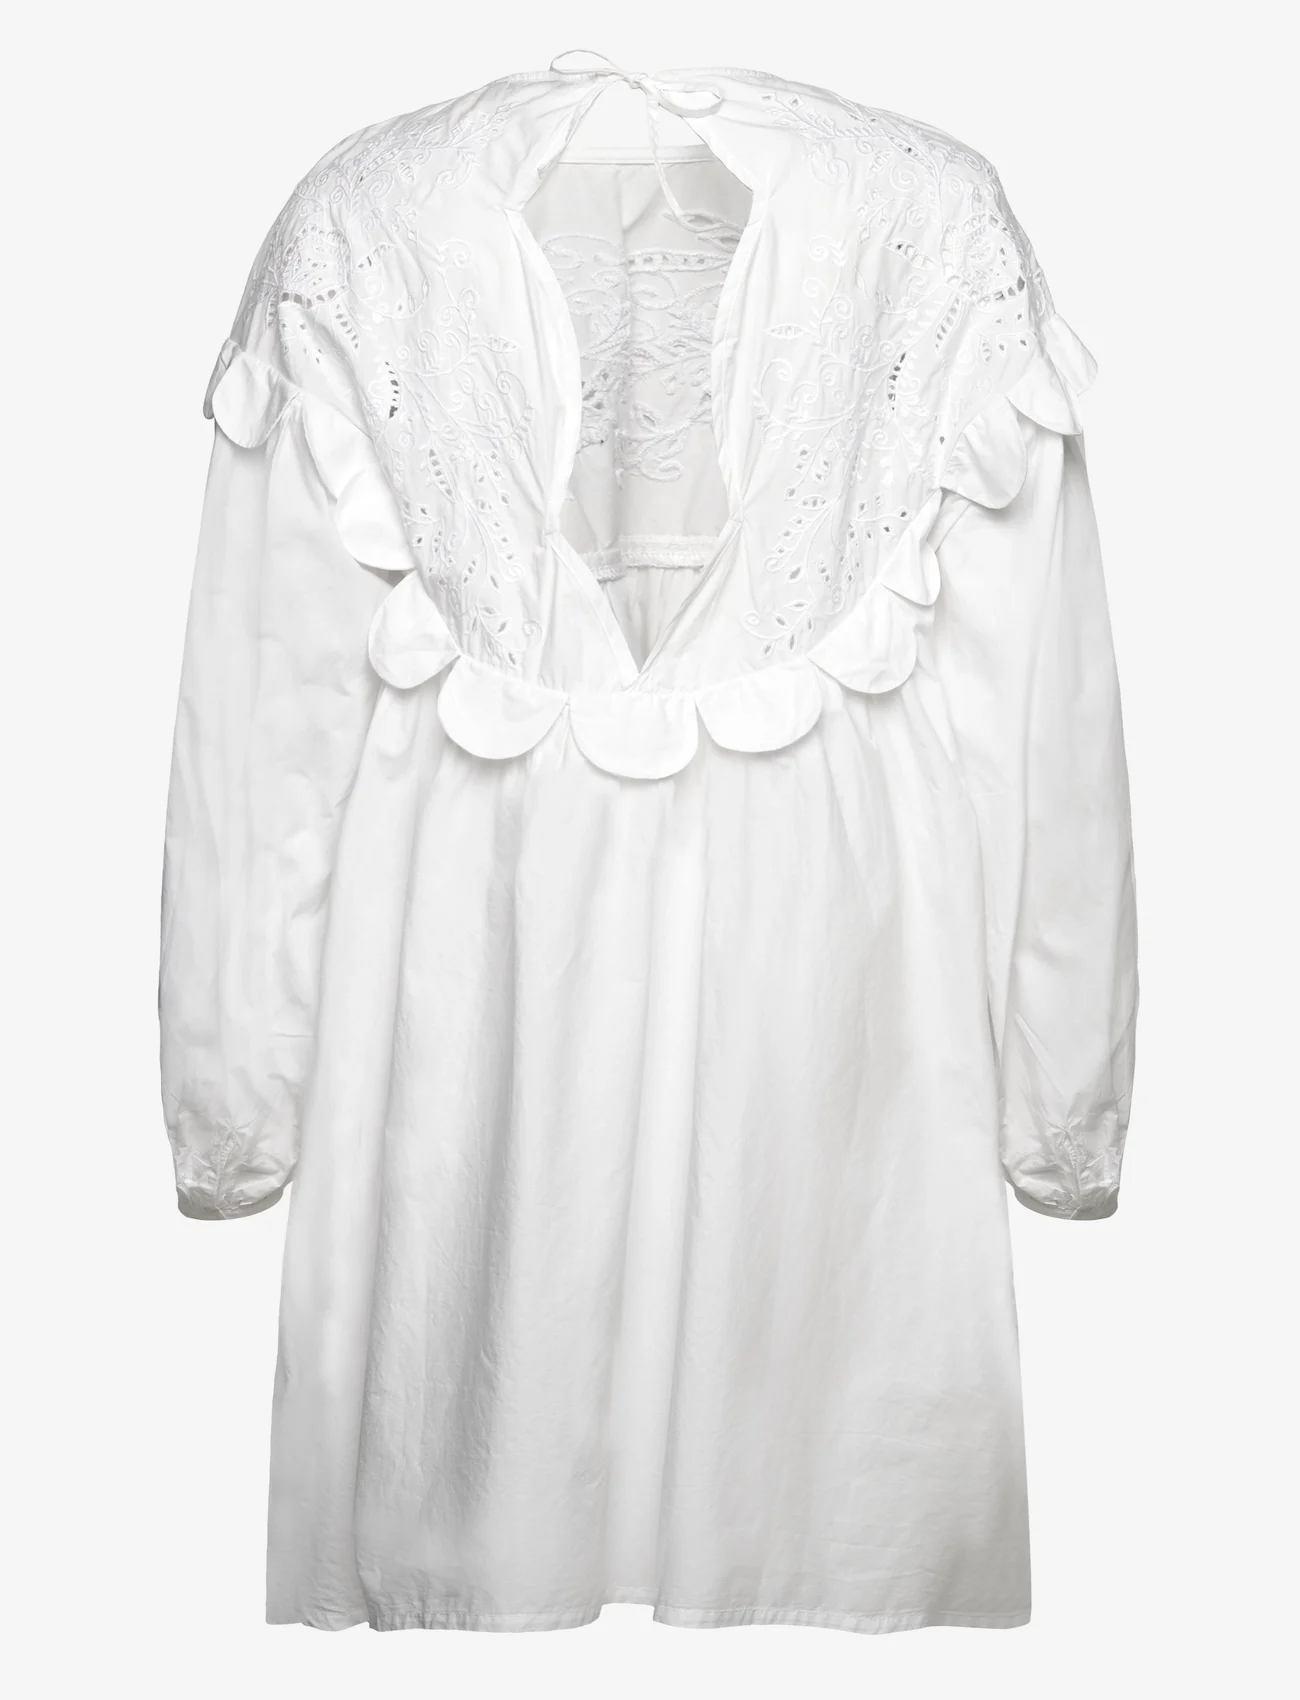 Stella Nova - Embroidery Anglaise mini dress - summer dresses - white - 1